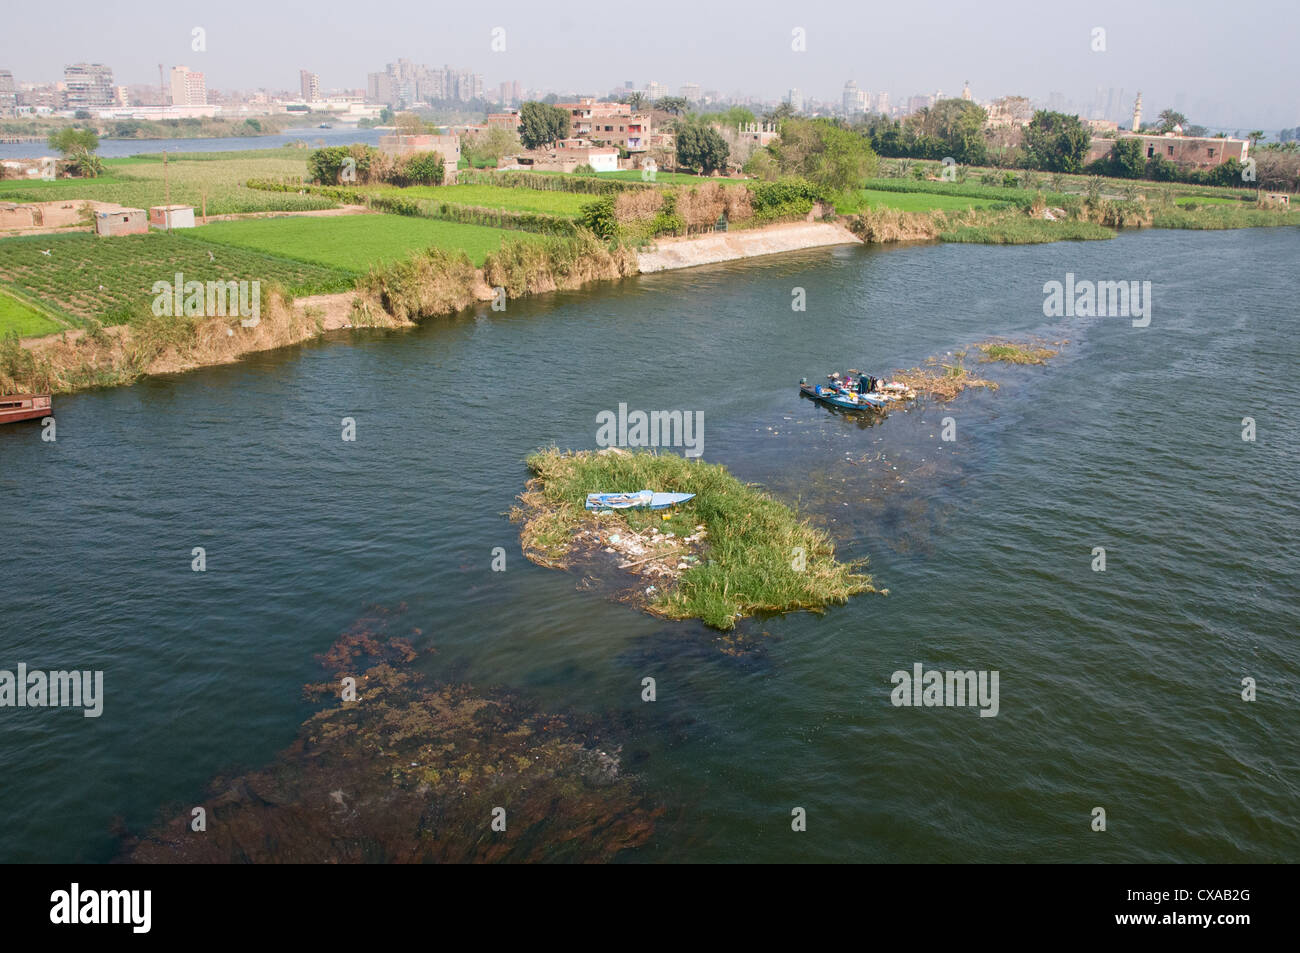 Vue de l'île rurale de Geziret El-Dahab sur le Nil où il existe encore des terres agricoles au Caire Egypte Banque D'Images